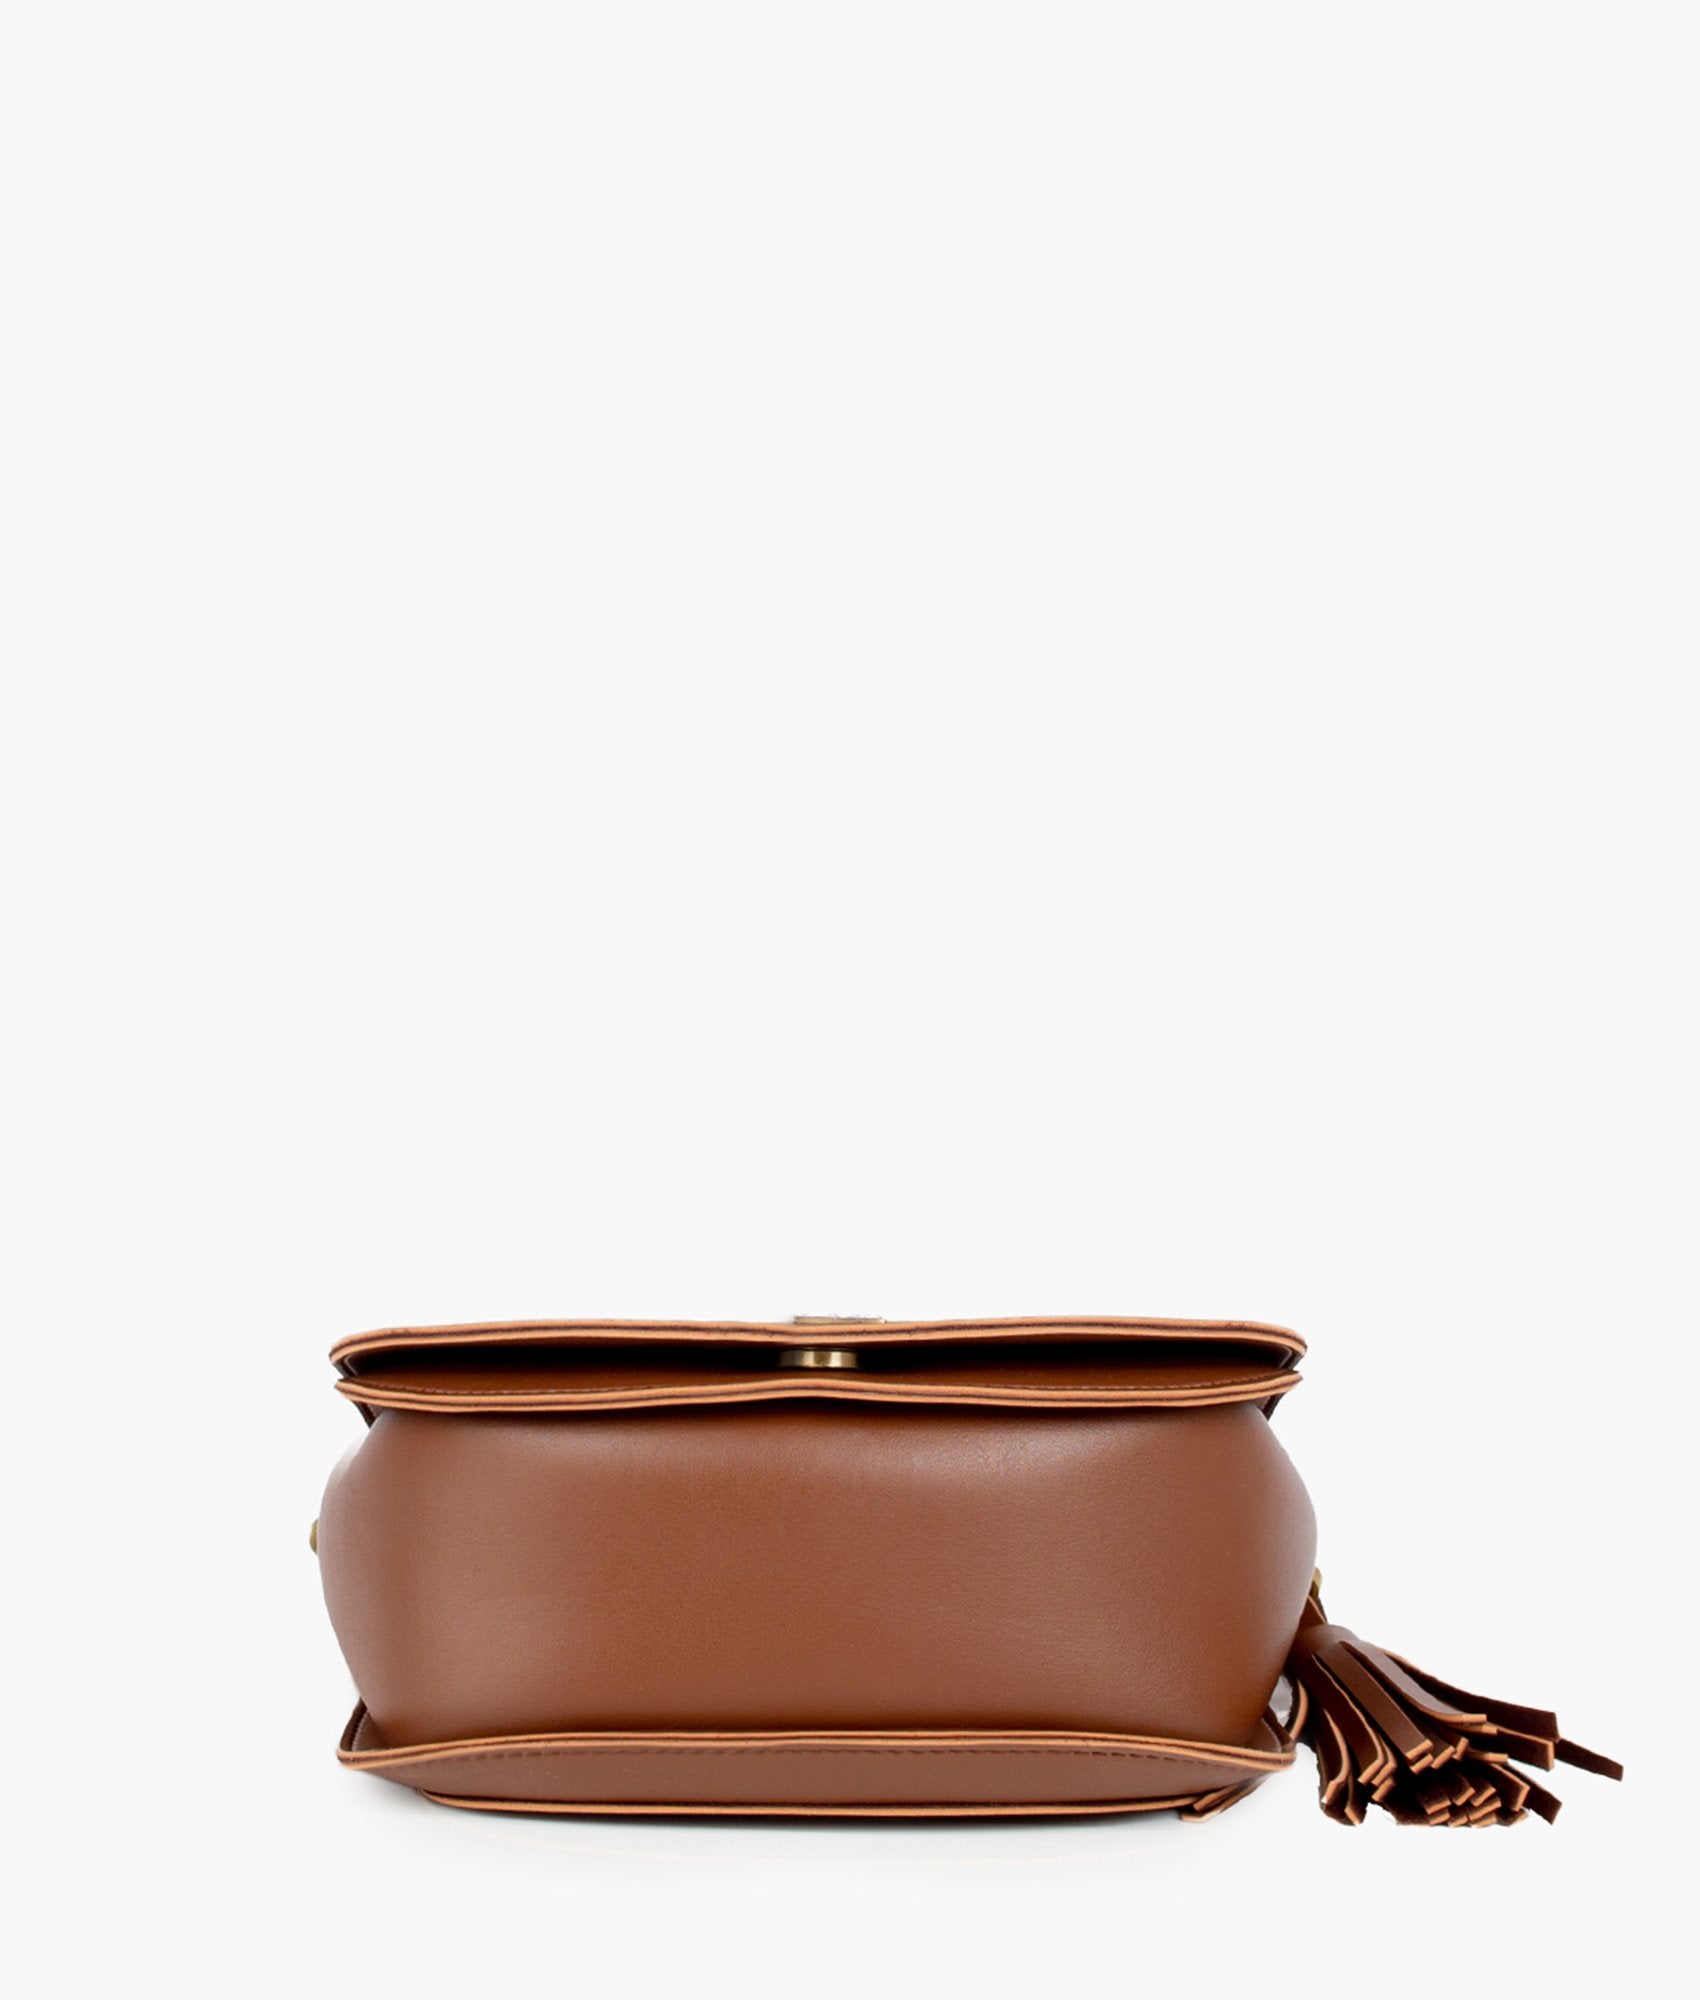 Brown foldover saddle bag